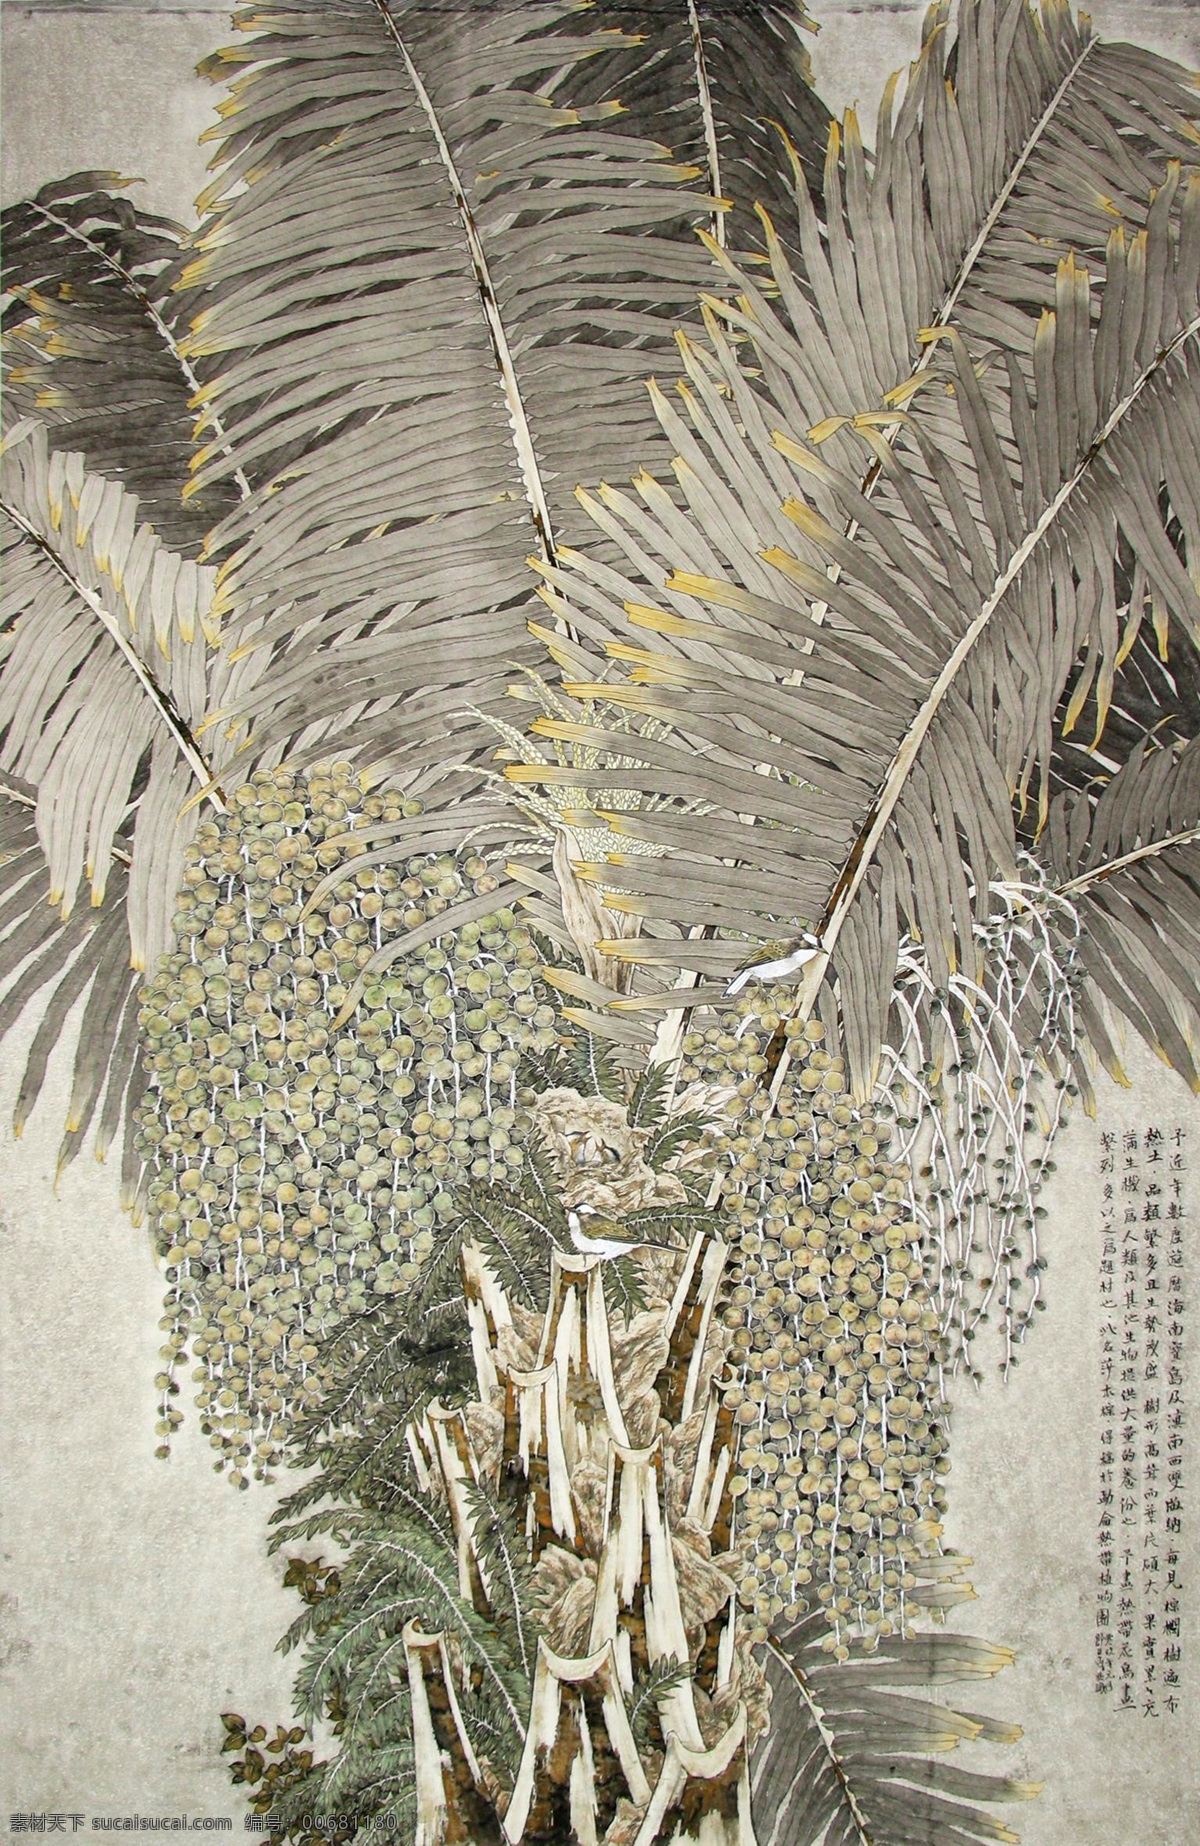 硕果累累 棕榈 热带植物 花卉 树木 古典 国画 郭子良 工笔 花鸟 名家工笔 绘画书法 文化艺术